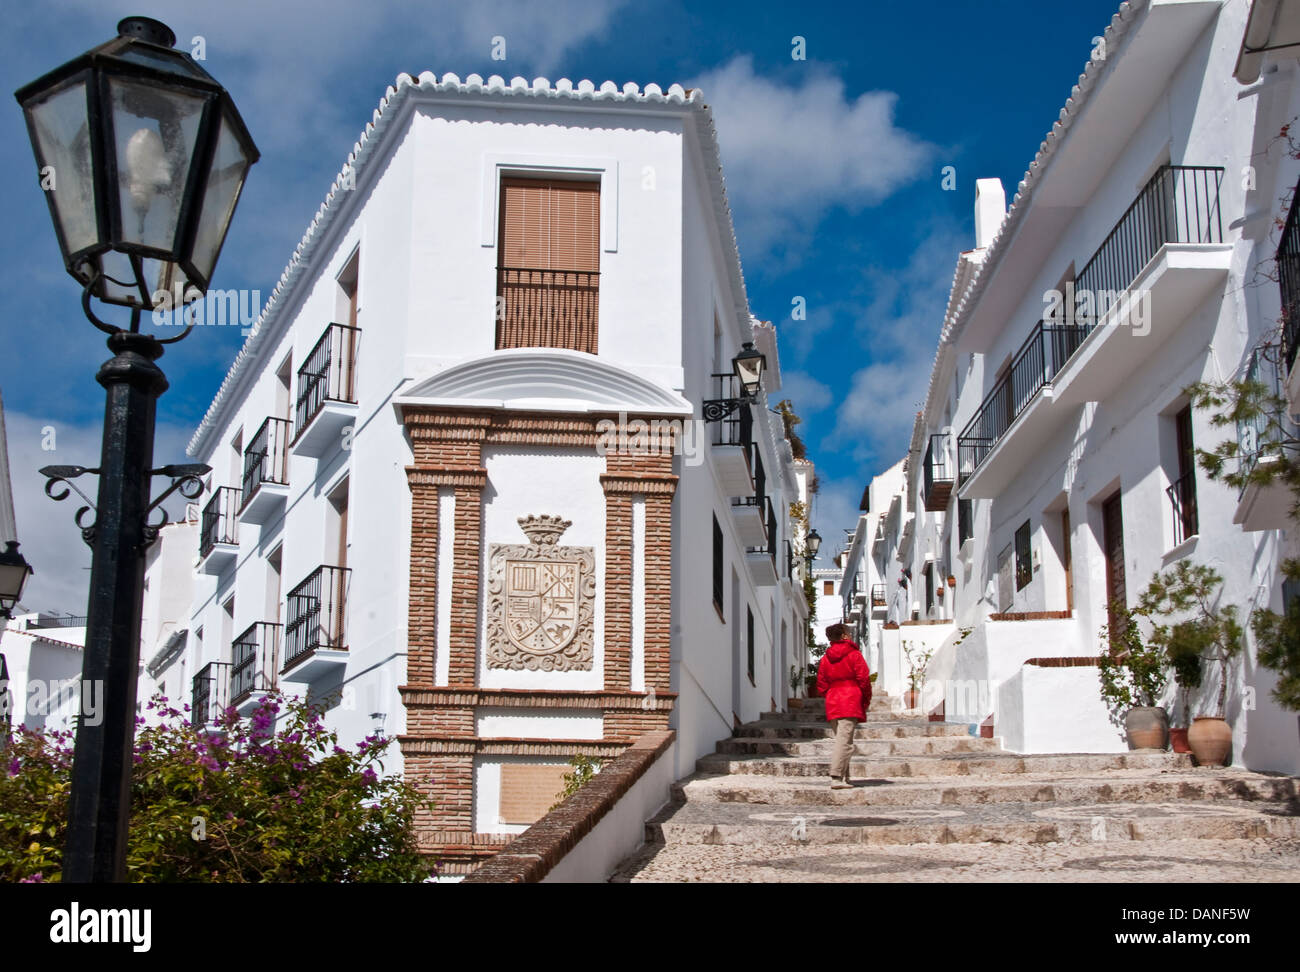 Frigiliana, Andalucian white village on Costa del Sol, Spain. Stock Photo